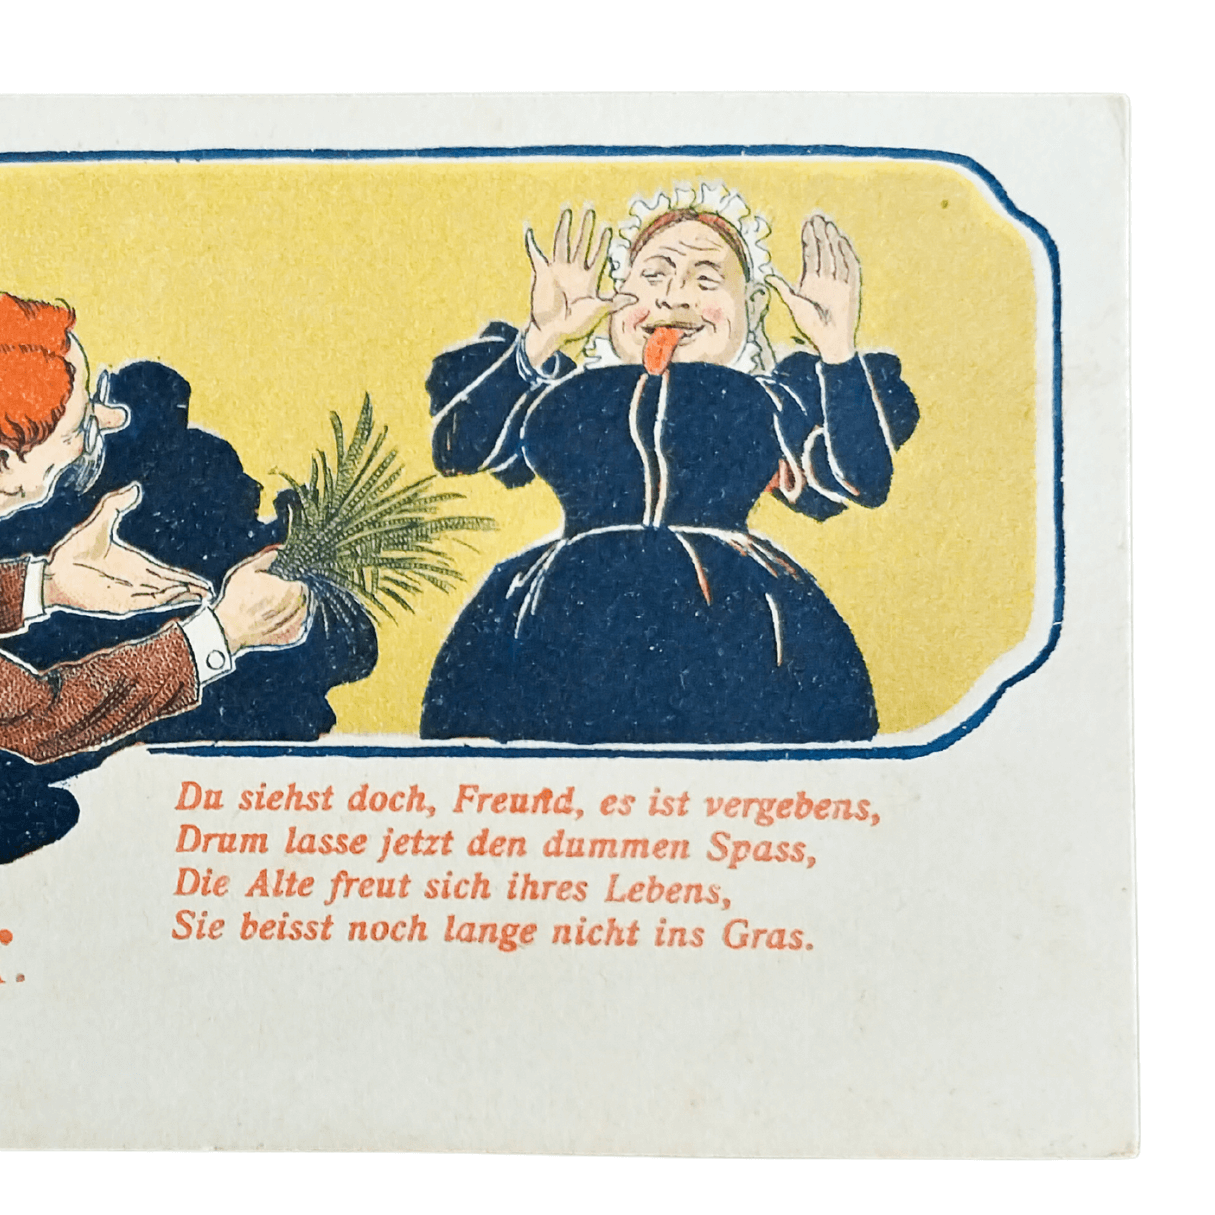 Cartão Postal Antigo Alemão de Ano Novo (Prosit Neujahr) - Velha e a grama